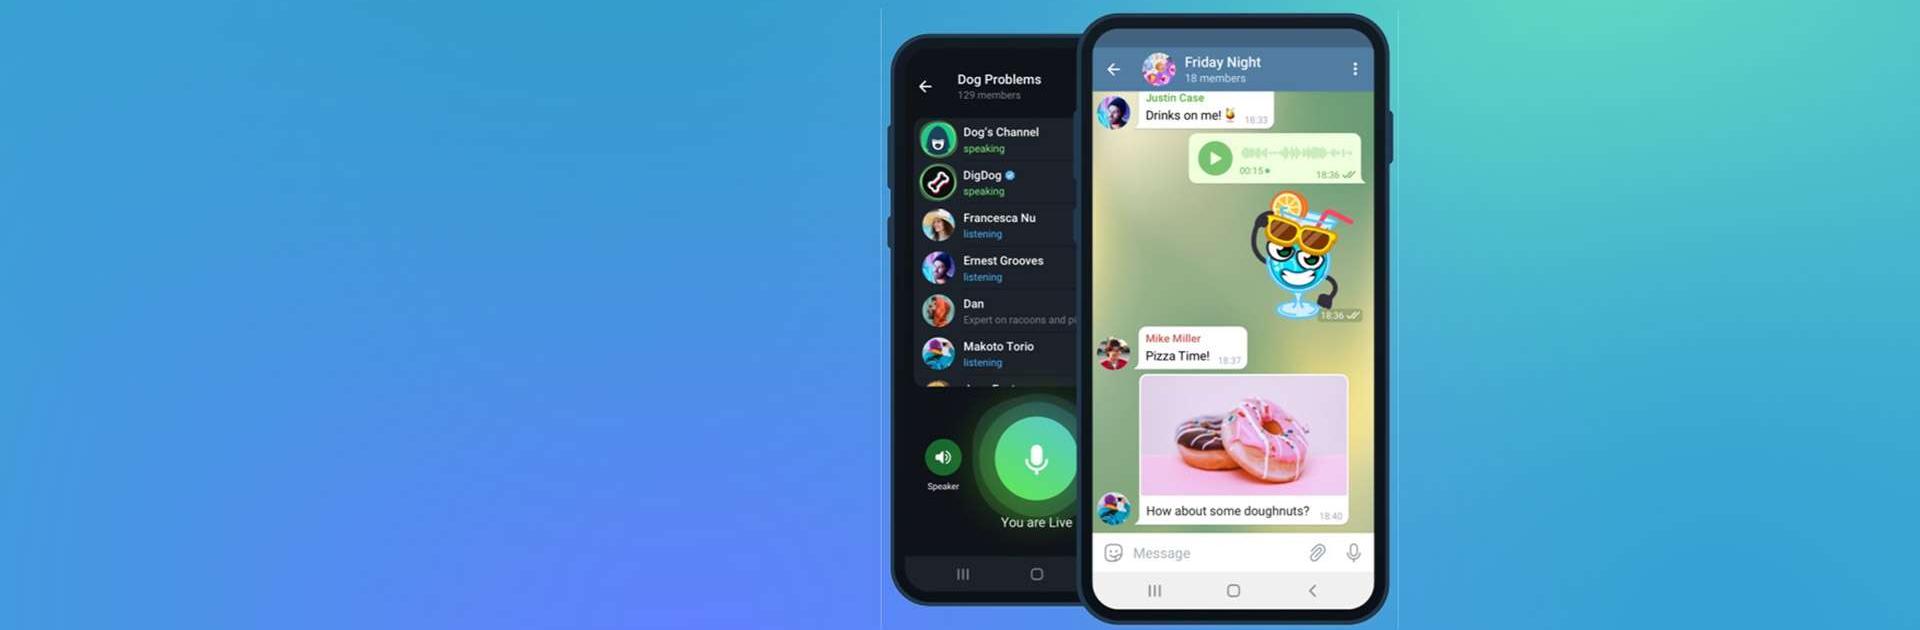 텔레그램 공식 앱 Telegram